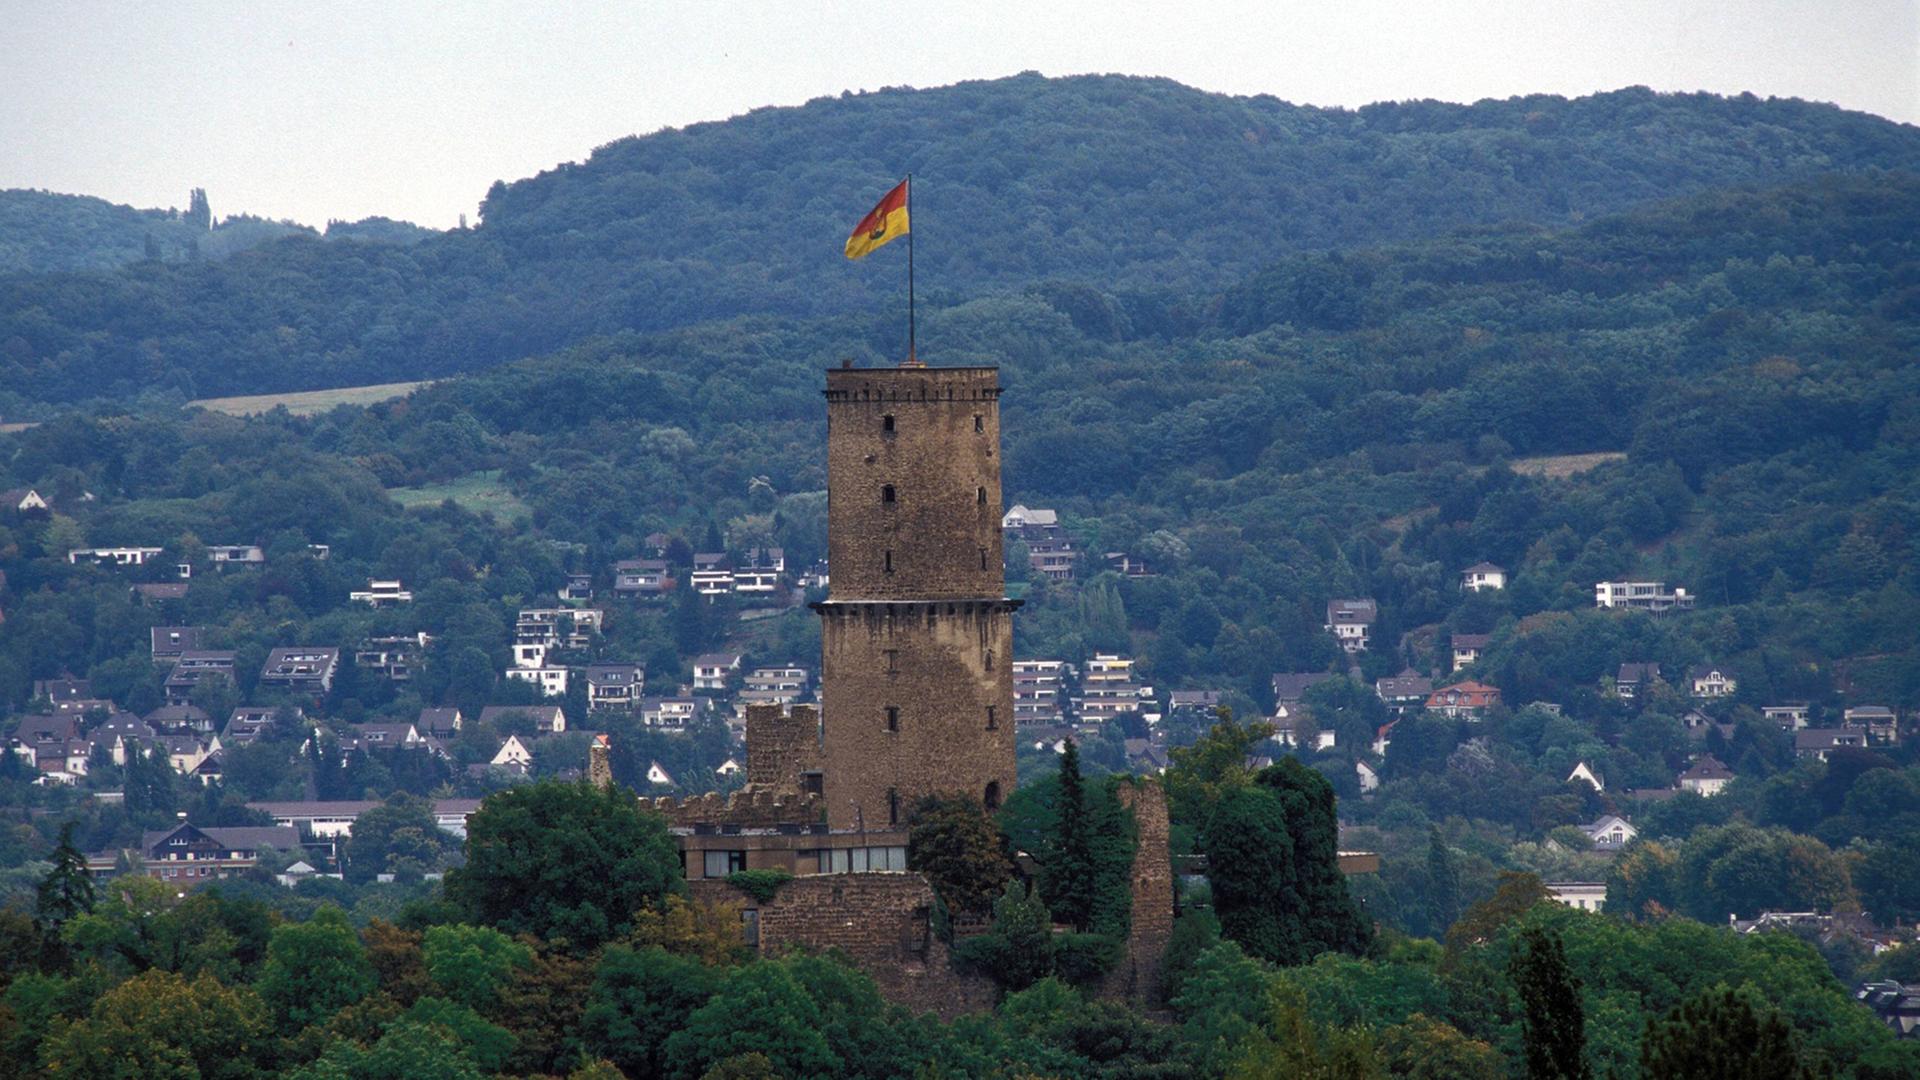 Blick auf die Ruine der Godesburg und auf Teile der Stadt